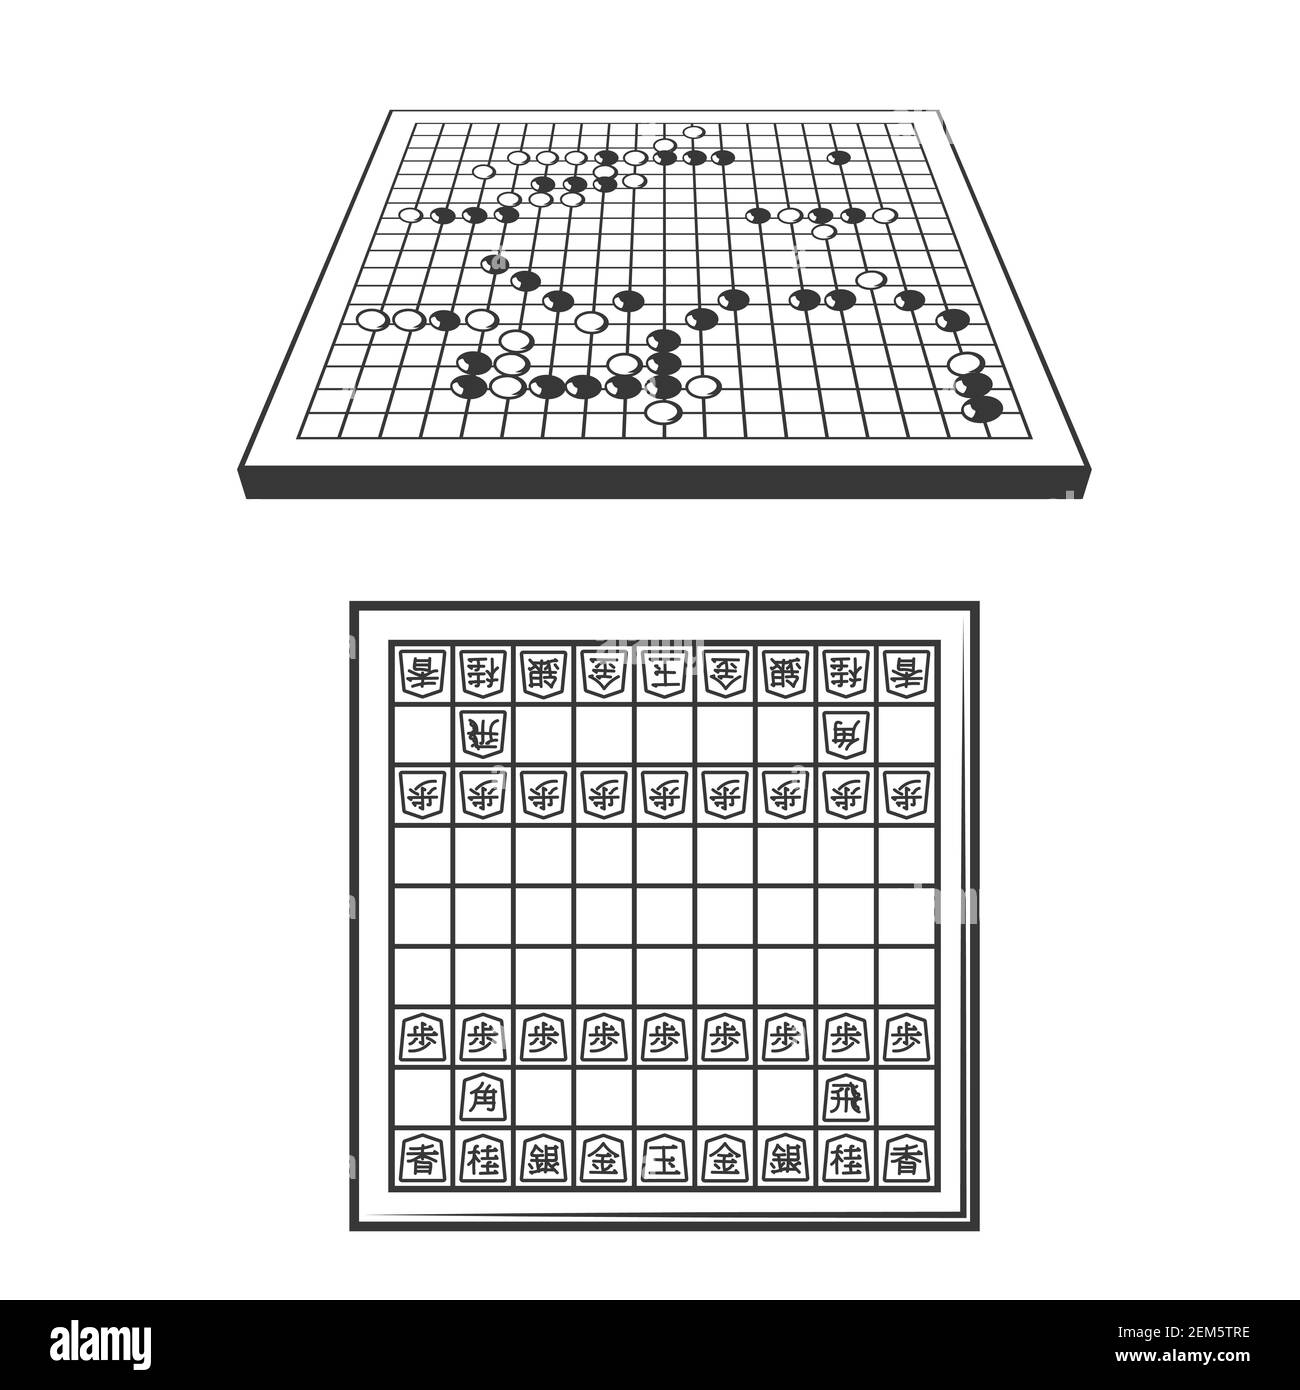 Go und Shogi Schach Japanische Strategie Spielbretter. Hölzerne Vektorbretter mit Stücken, schwarze und weiße Steine auf Spielfeldgittern, orientalisches Brettspiel it Stock Vektor